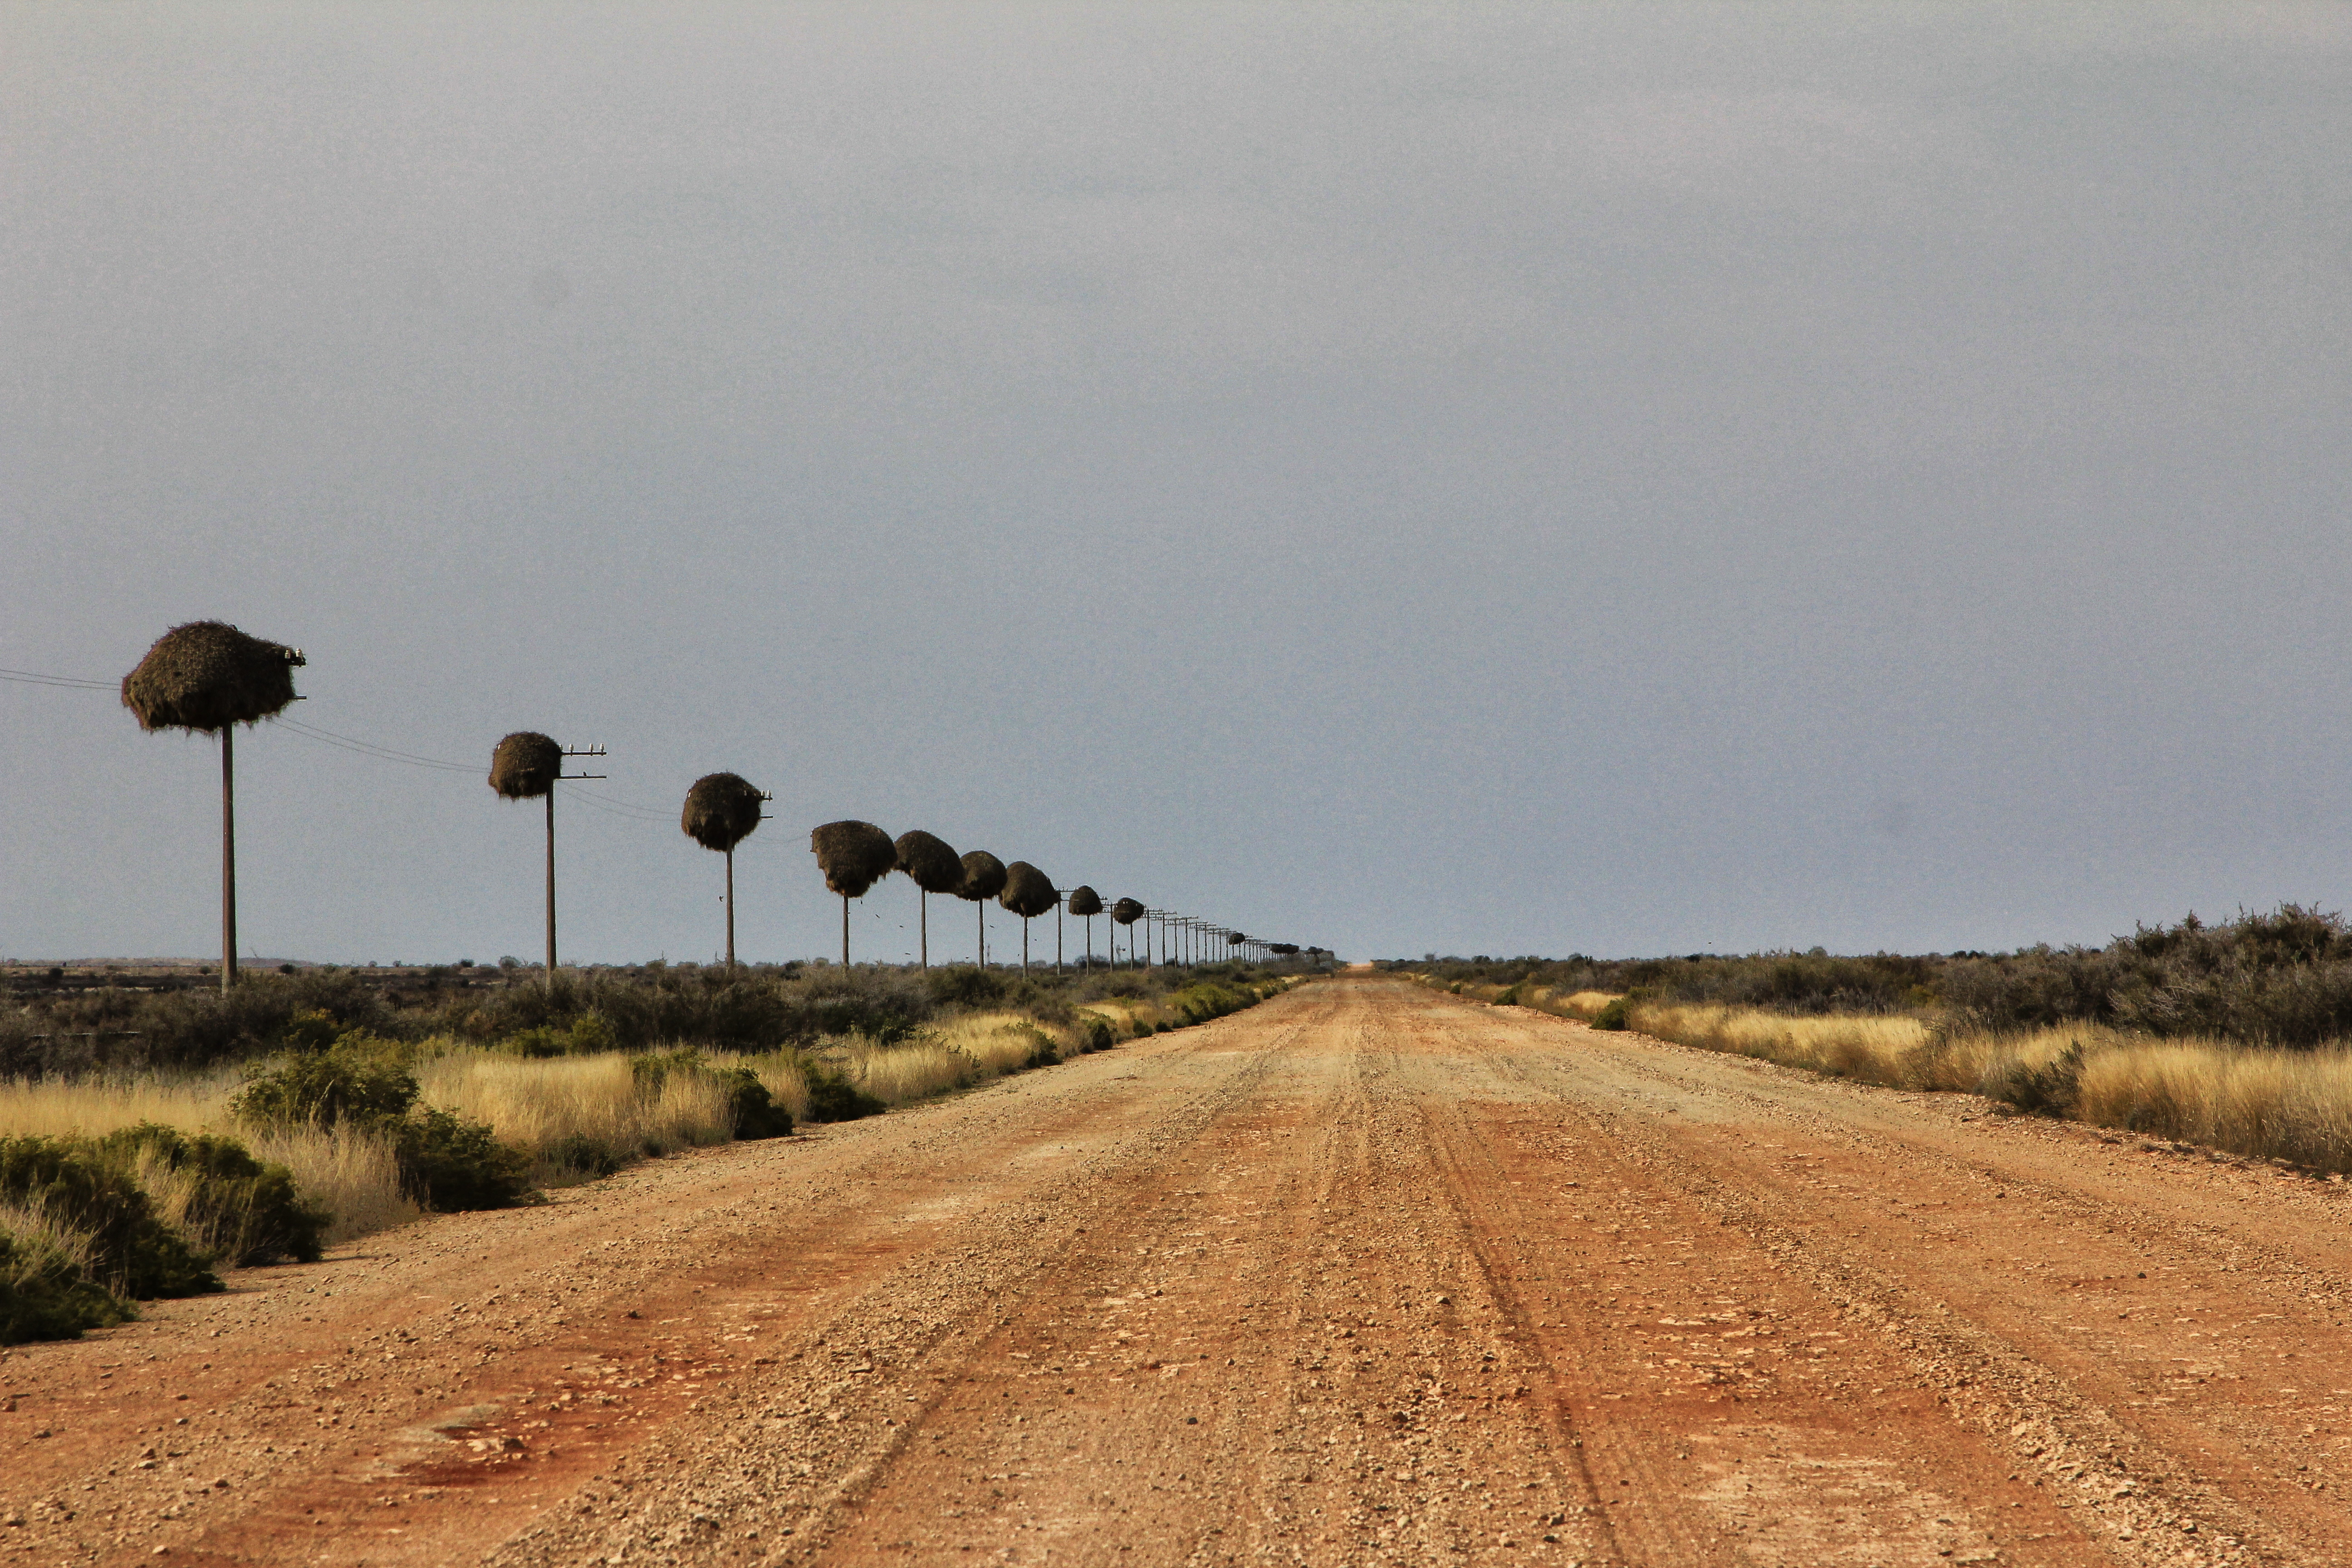 The Lollipop Highway of sociable weaver nests leading the traveller to Putsonderwater Station.